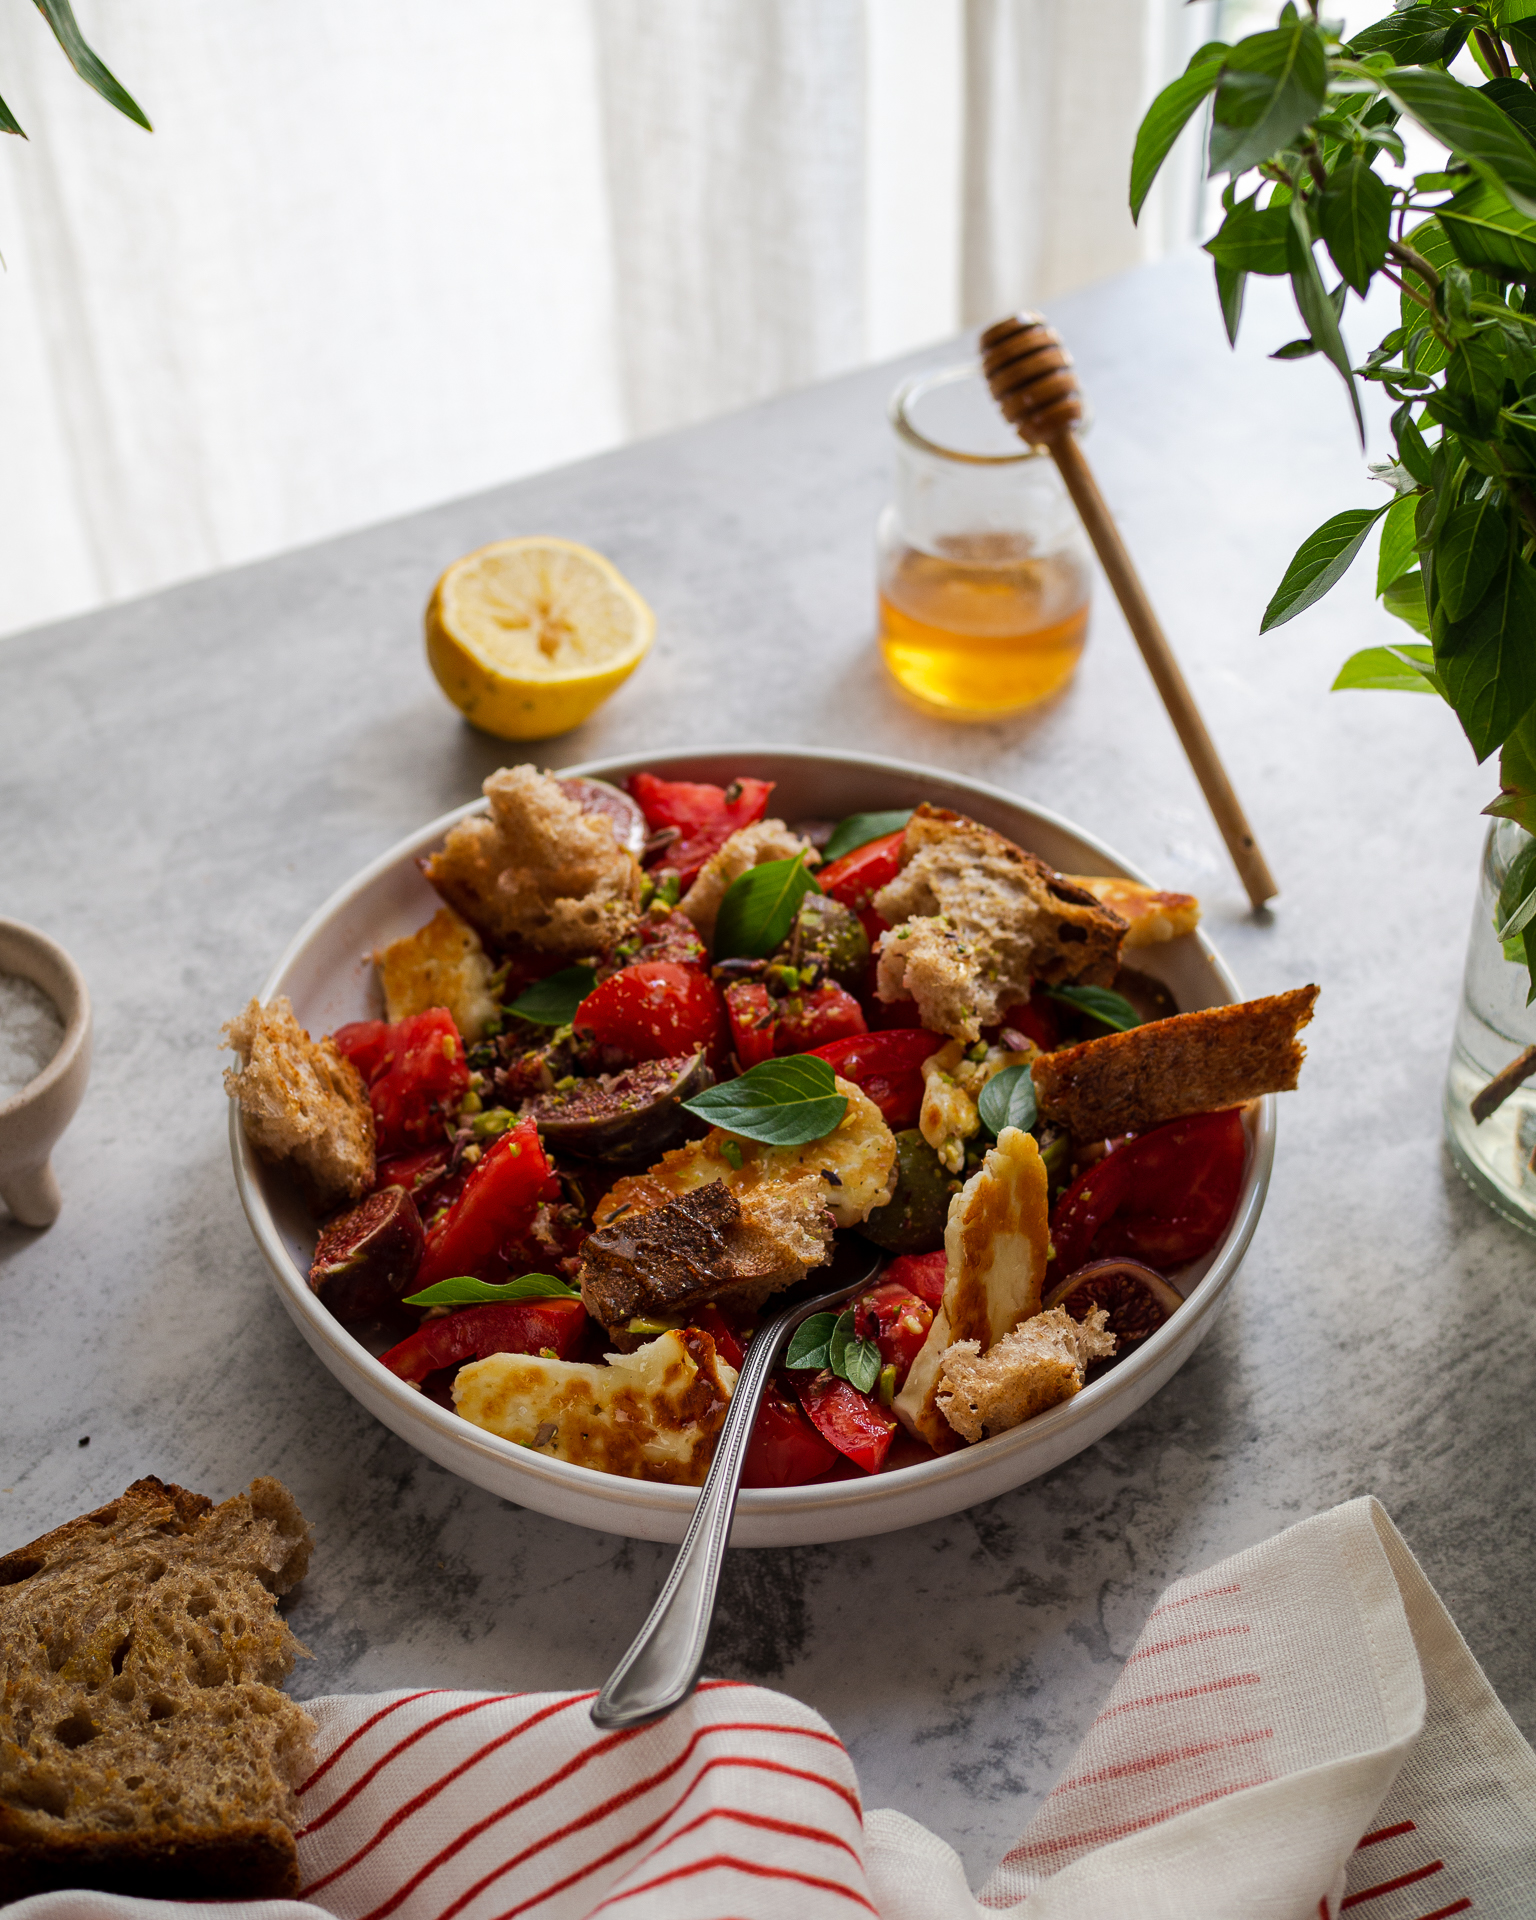 Η απόλυτη σαλάτα του αποκαλόκαιρου, που τα σύκα και οι ντομάτες είναι στα καλύτερά τους, και η διάθεση για μαγείρεμα ανύπαρκτη. Ένα ελαφρύ και εύκολο μεσημεριανό που μυρίζει καλοκαίρι.